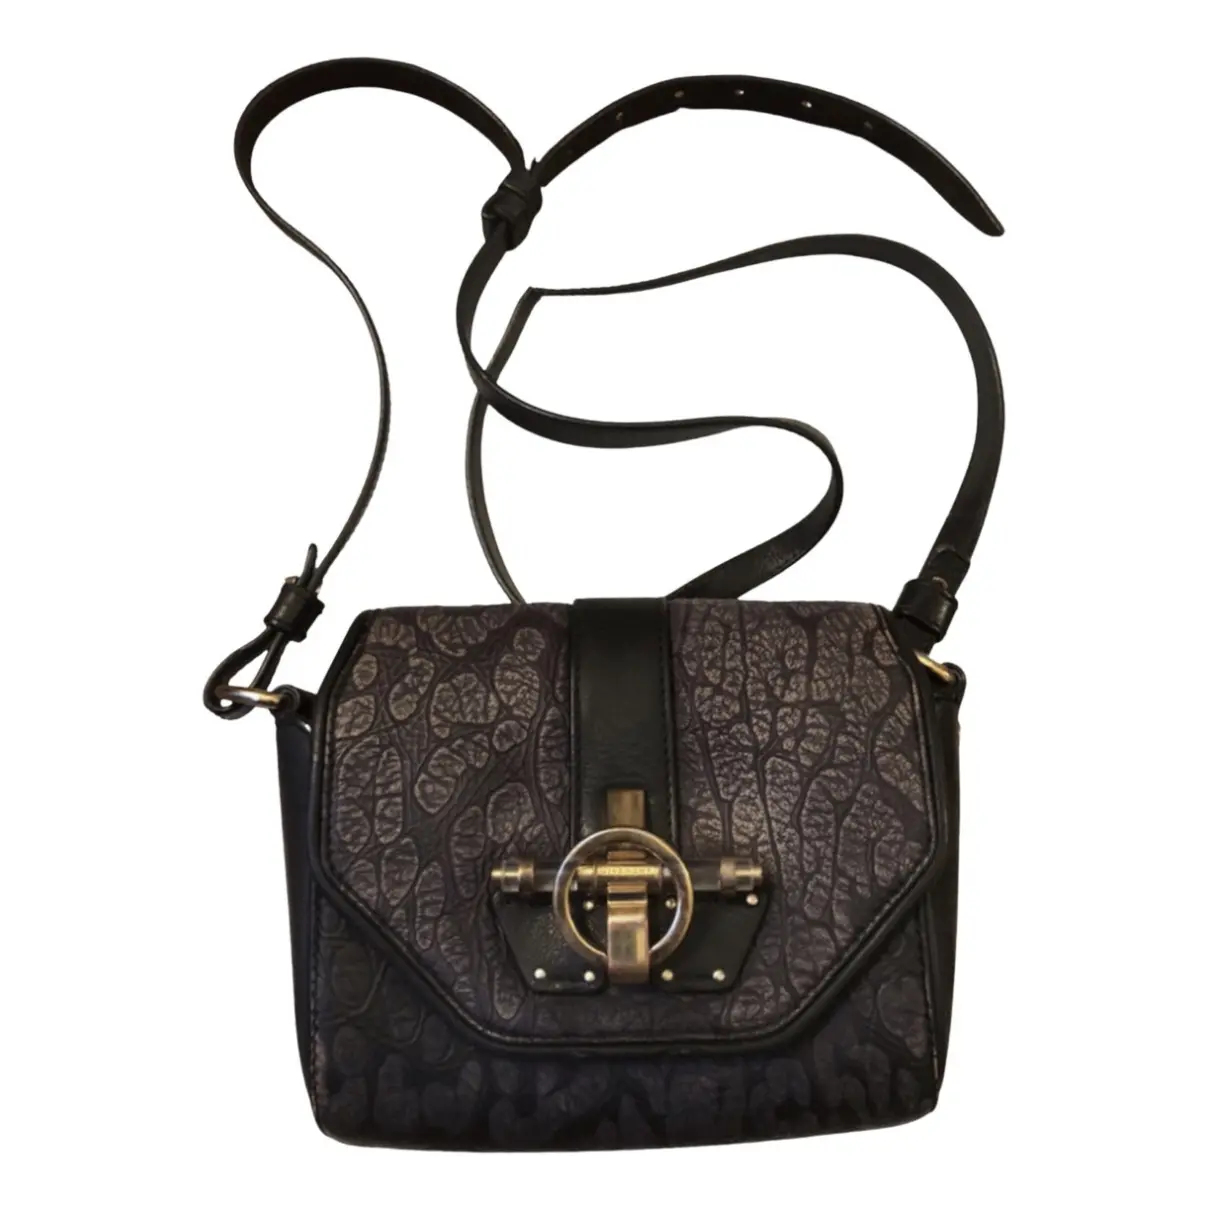 Obsedia leather handbag